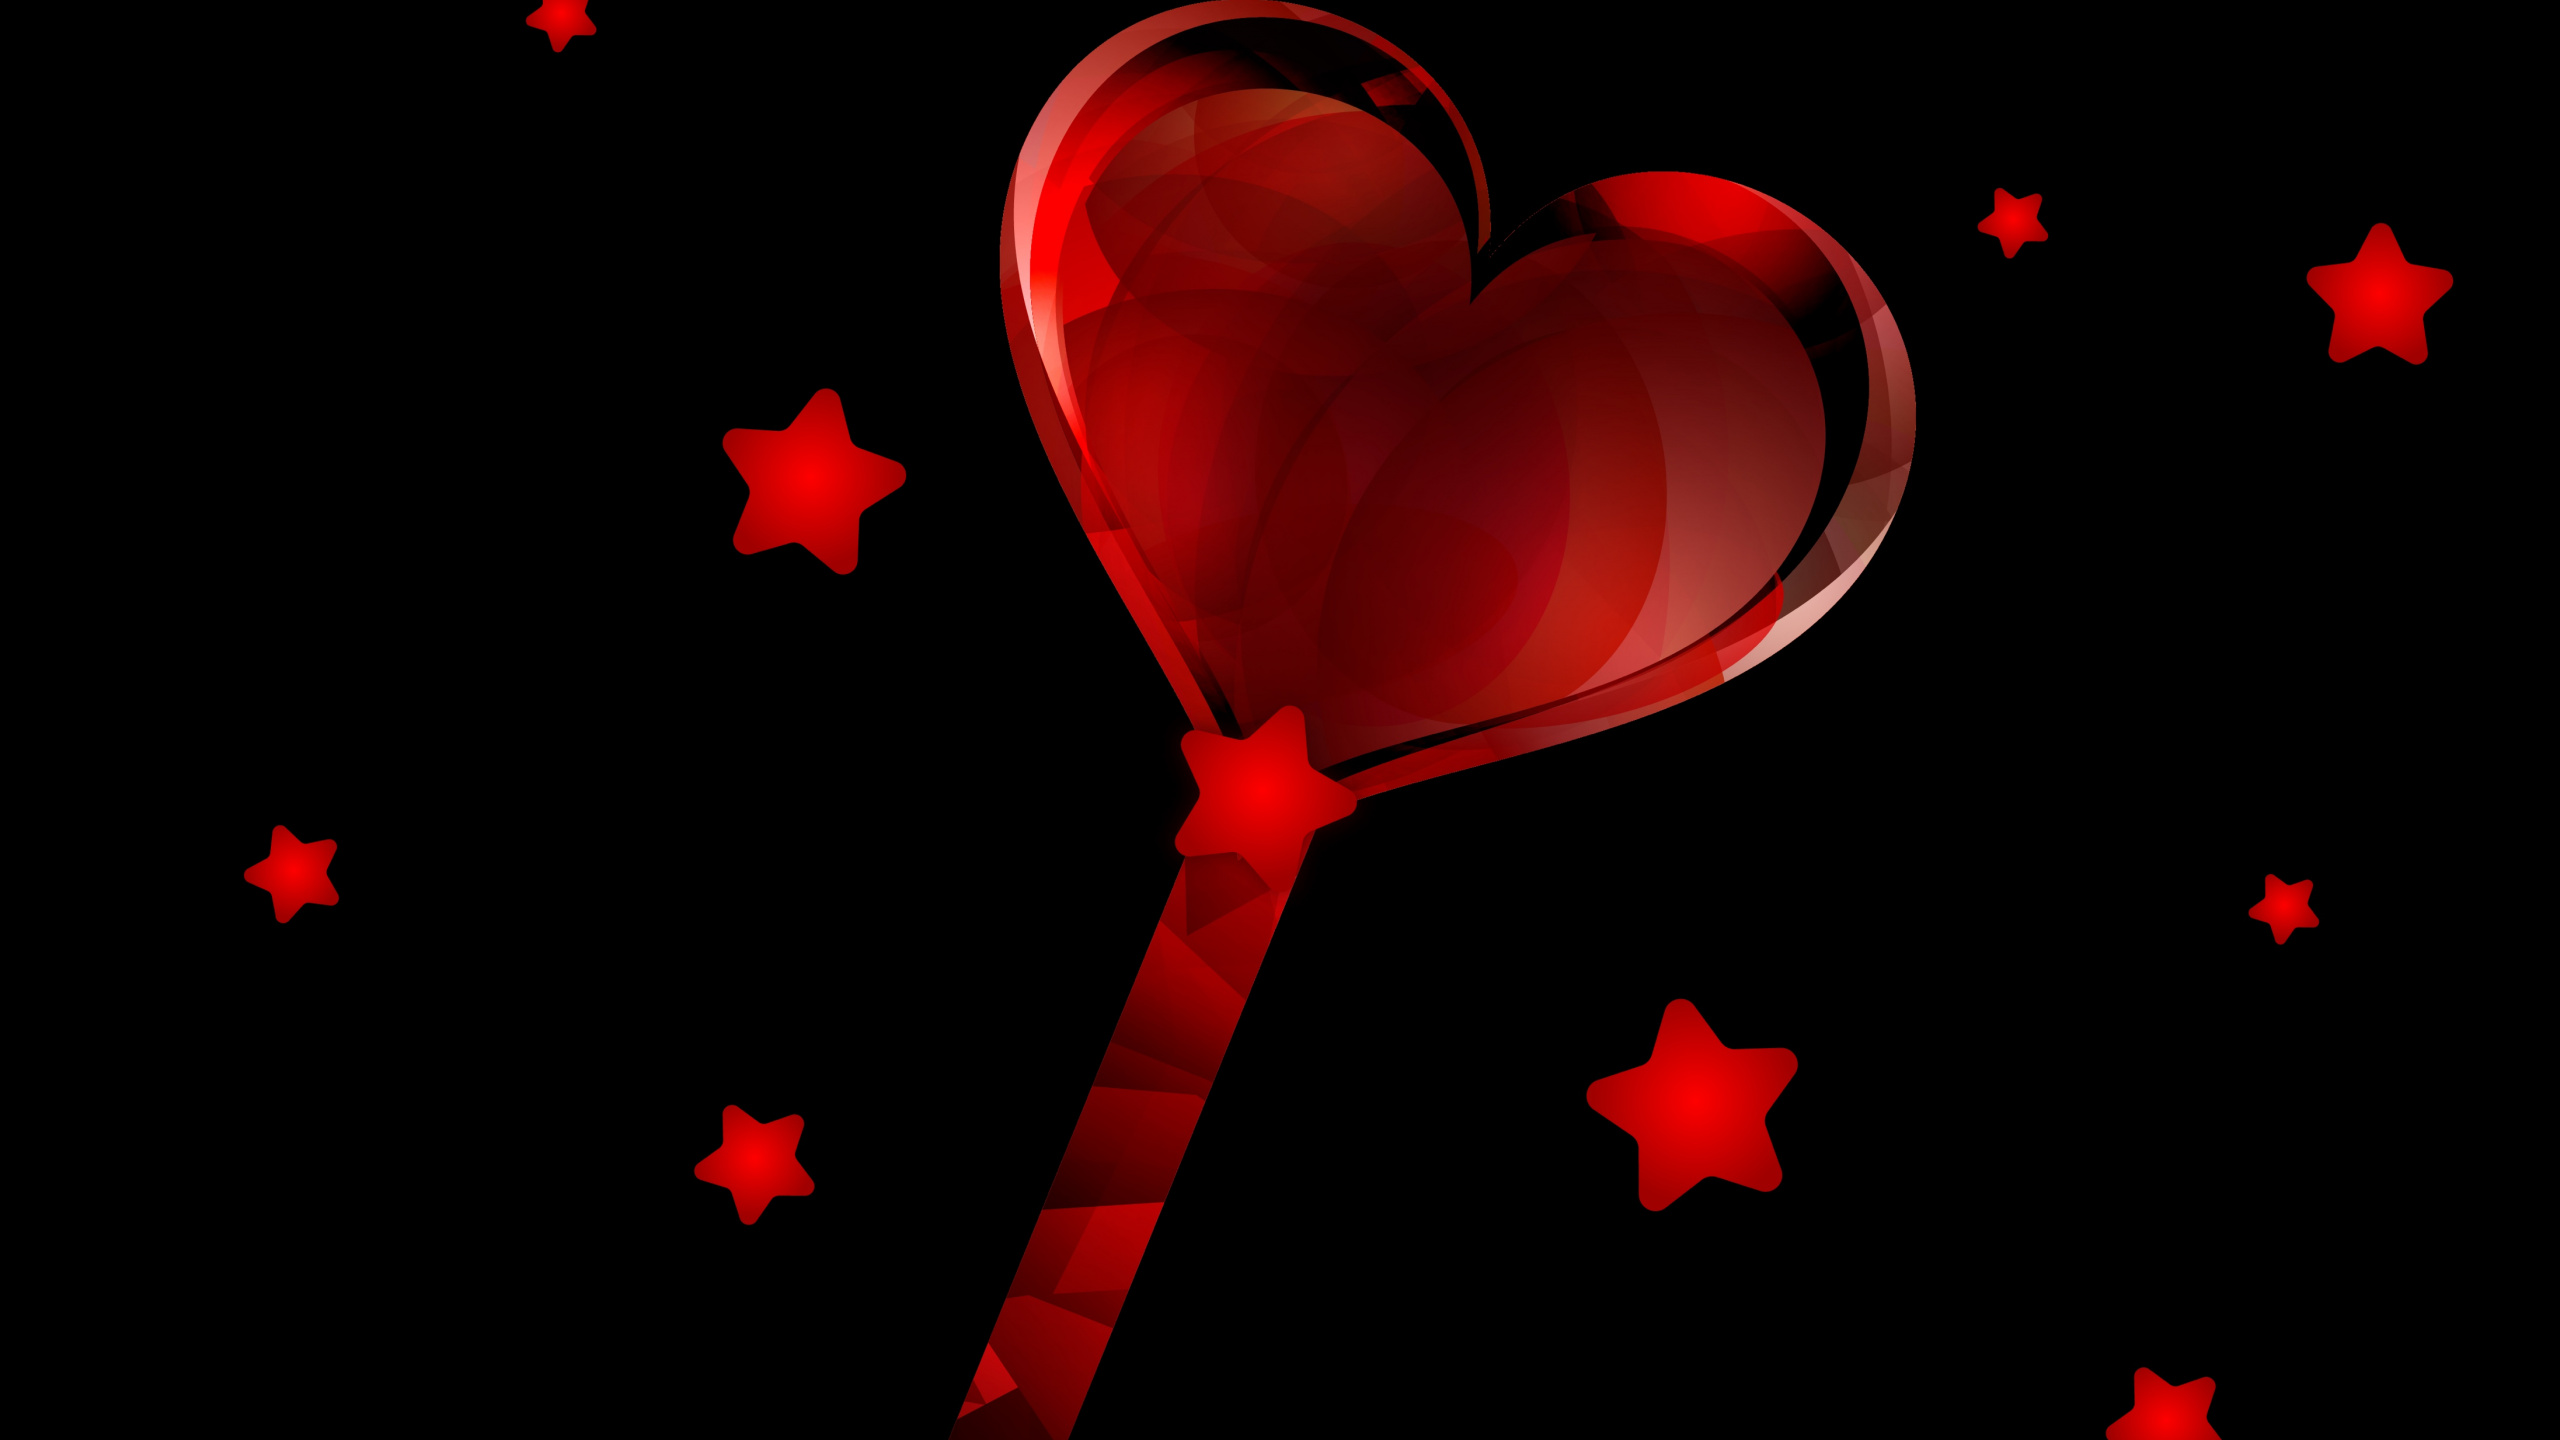 心脏, 红色的, 爱情, 深红色的 壁纸 2560x1440 允许